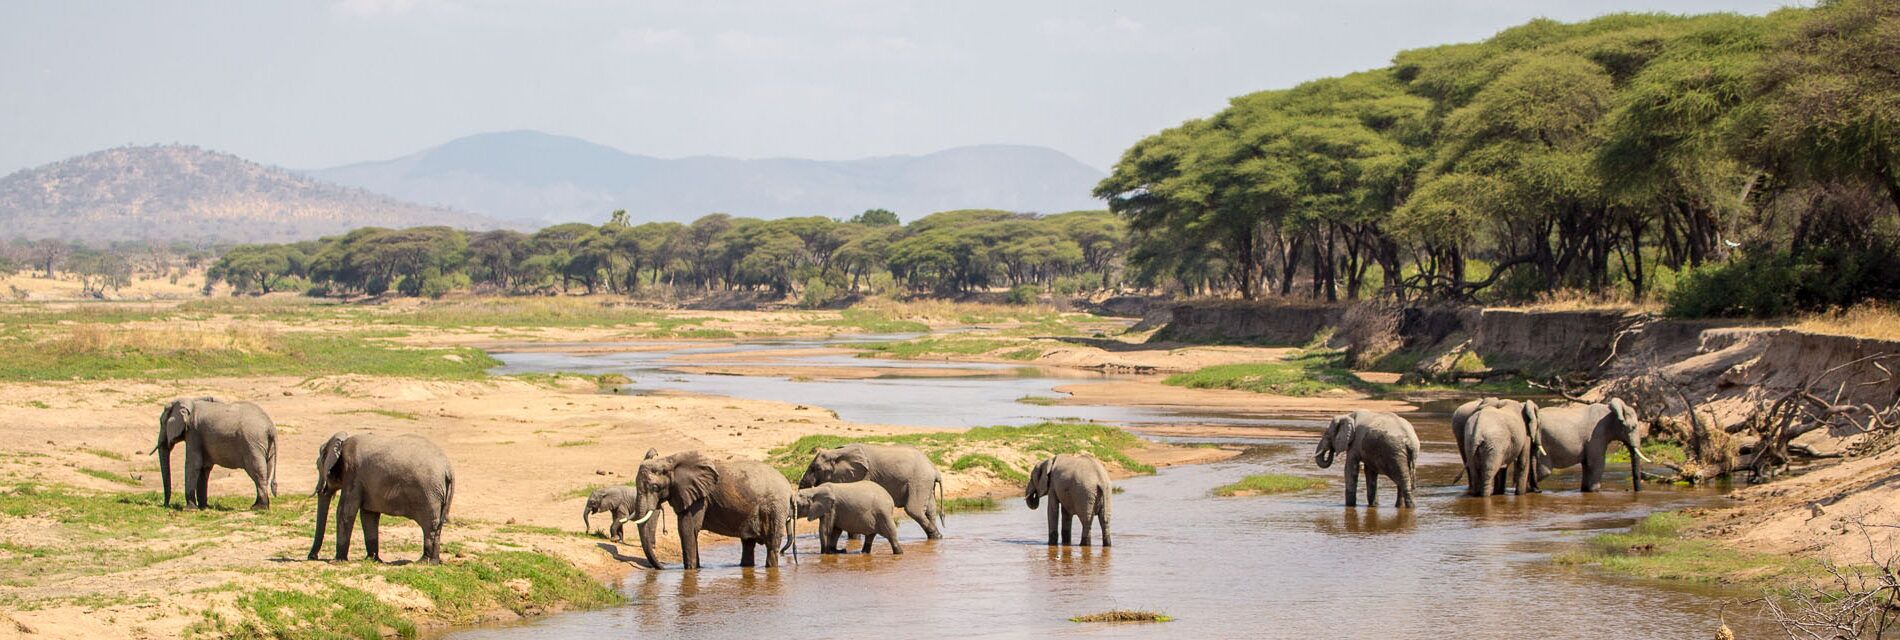 Ruaha national park Tanzania olifanten